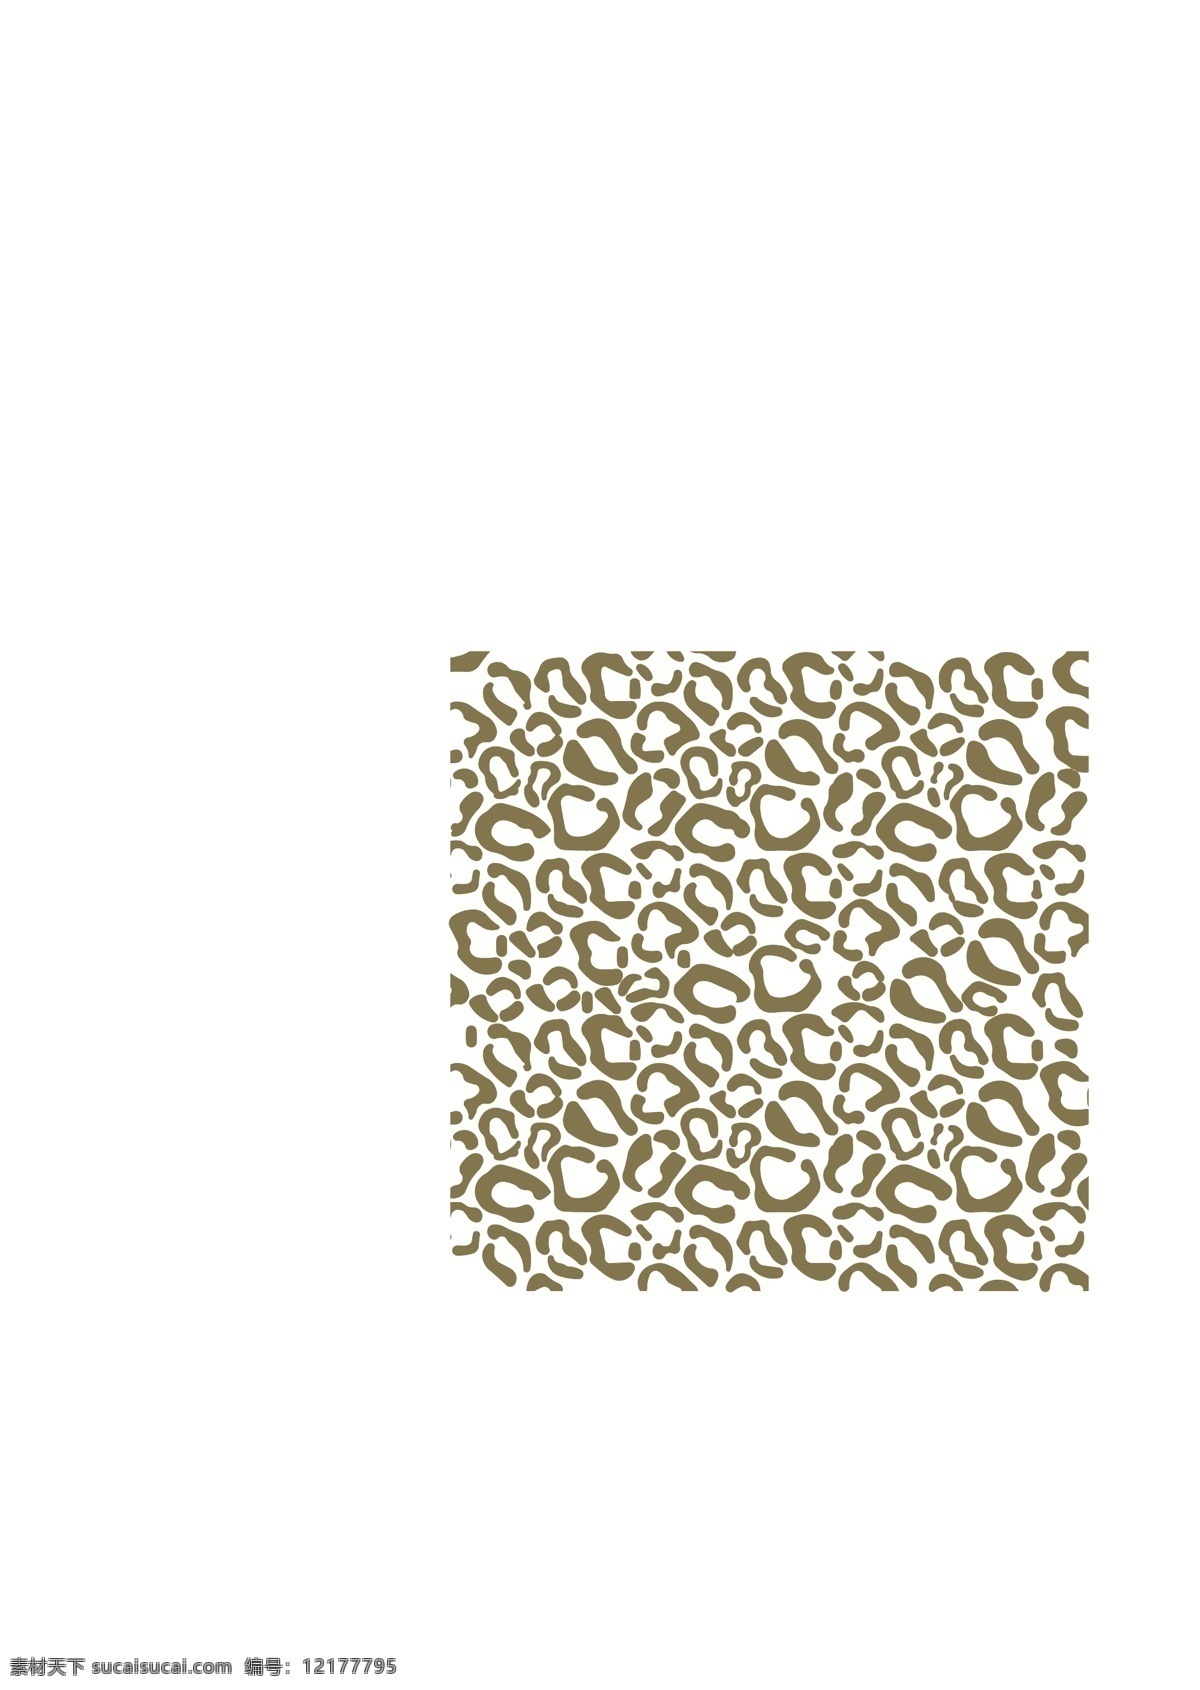 豹纹 图案 矢量 豹 模式 矢量图形 花纹花边